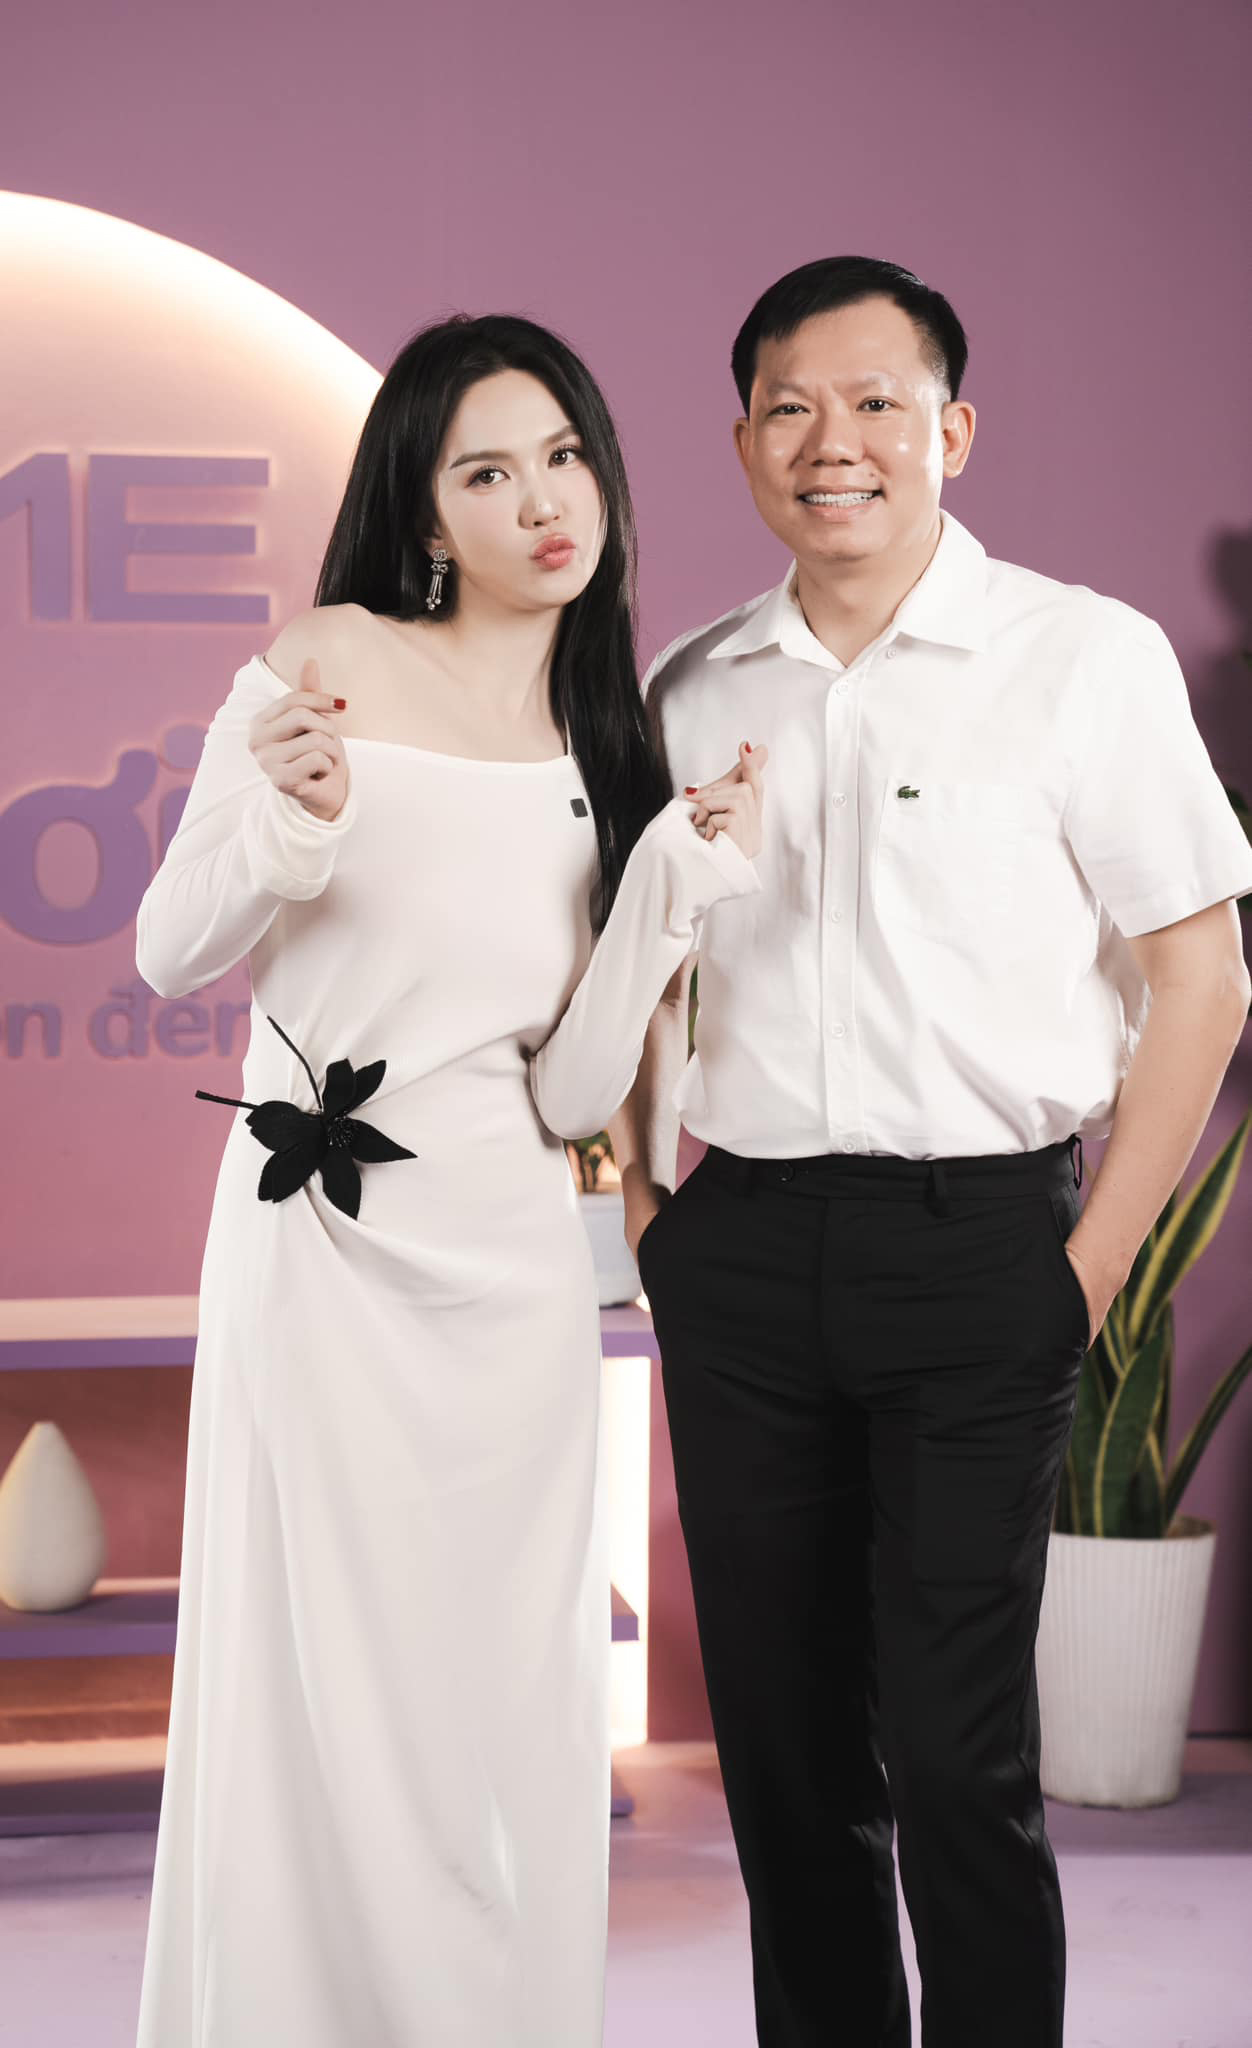 Người đẹp gốc Trà Vinh đang đồng hành cùng bác sĩ Cao Hữu Thịnh trong hành trình làm IVF.